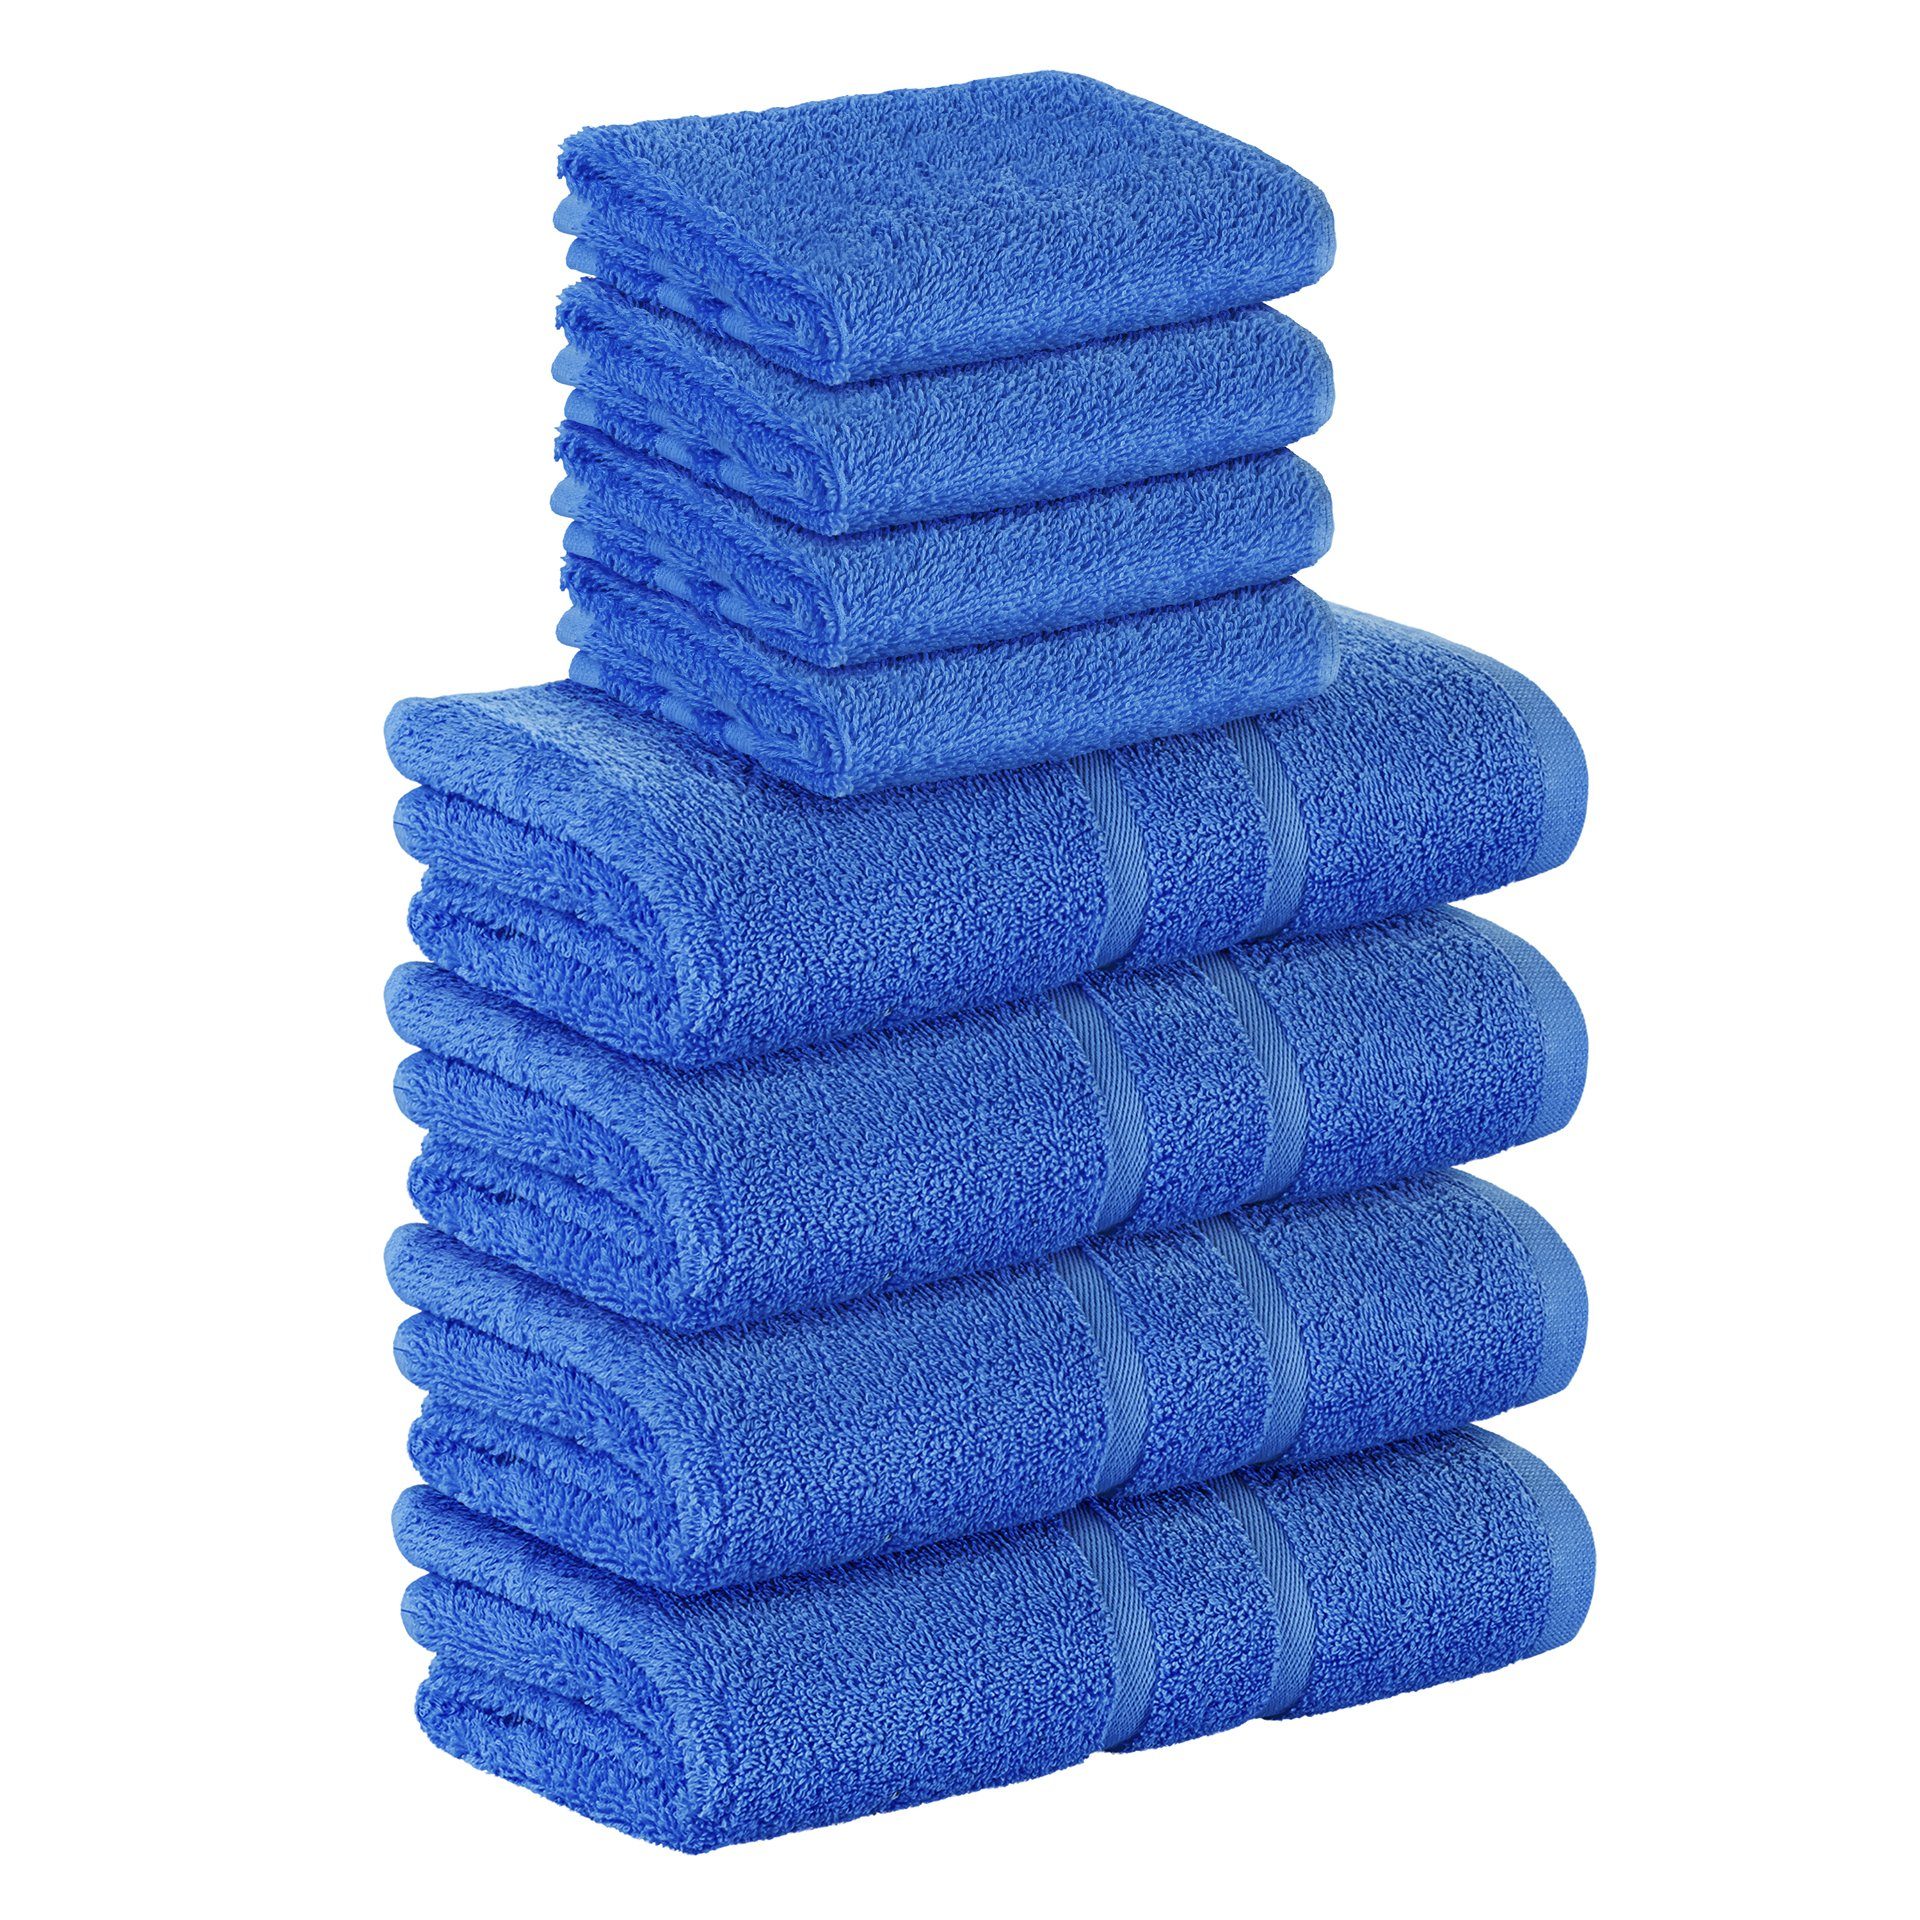 StickandShine Handtuch Set 4x GSM (8 Handtücher verschiedenen Baumwolle 100% Teilig) 8er 4x 100% in Pack, 500 SET als Frottee Gästehandtuch Handtuch Blau Baumwolle GSM Farben 500